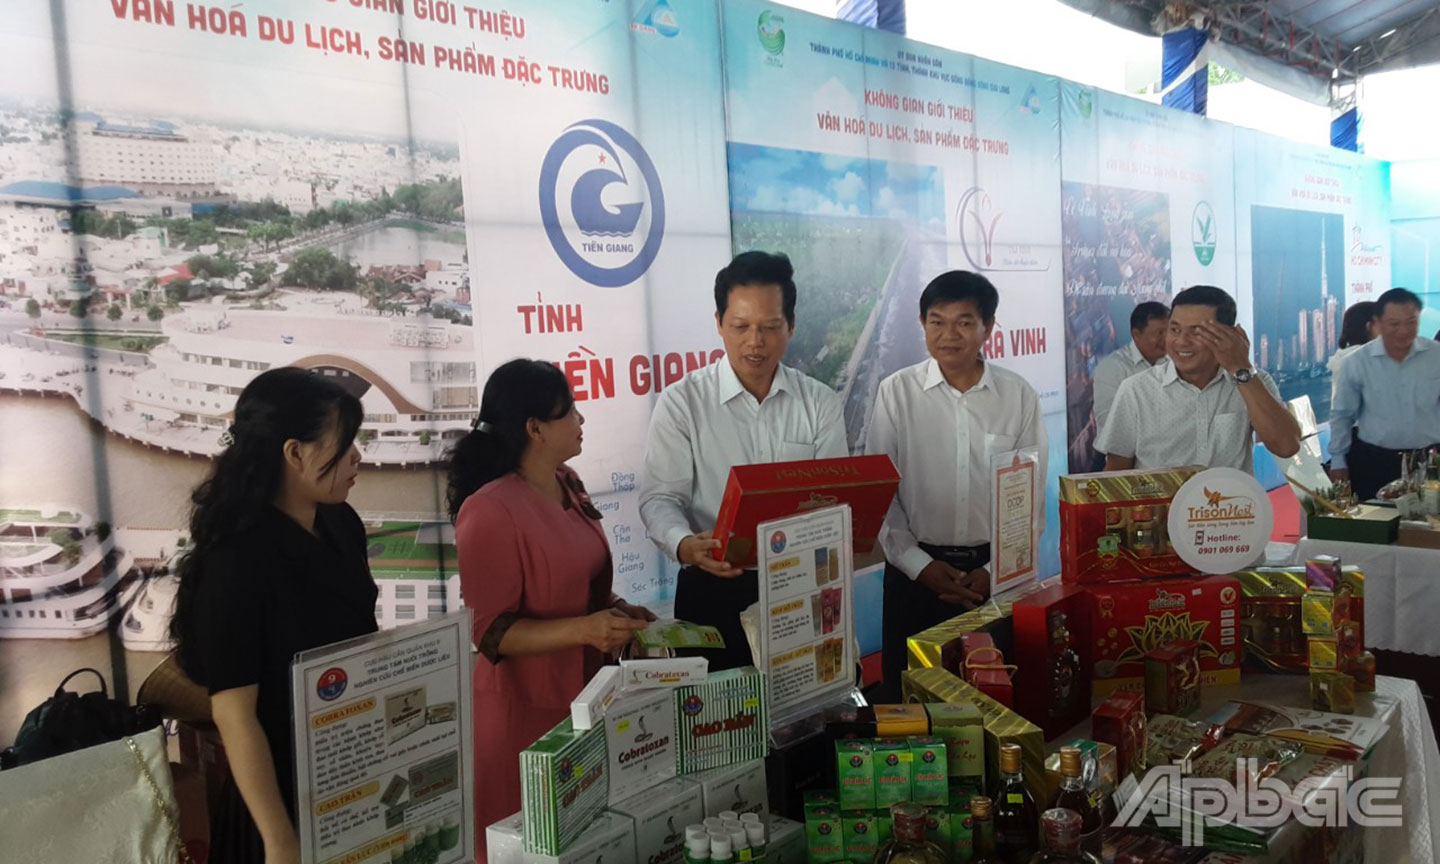 Lãnh đạo UBND tỉnh Tiền Giang tham quan không gian giới thiệu sản phẩm đặc trưng văn hóa - du lịch TP. Hồ Chí Minh và các tỉnh, thành ĐBSCL